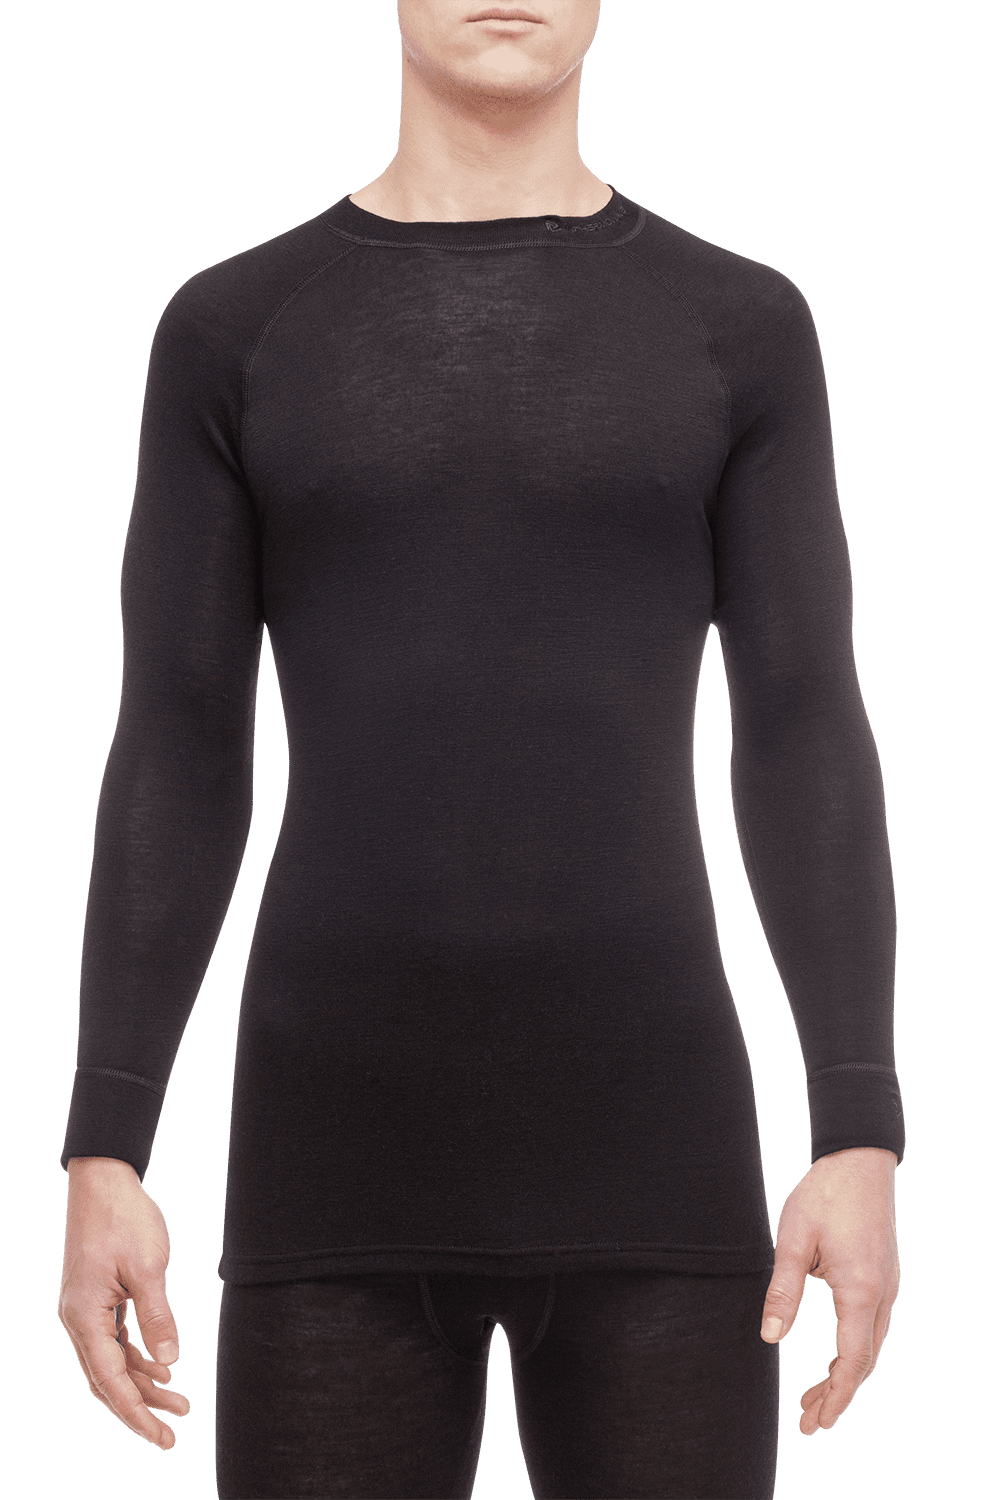 THERMOWAVE - MERINO WARM / Mens 100% Merino Wool Thermal Shirt / BLACK ...